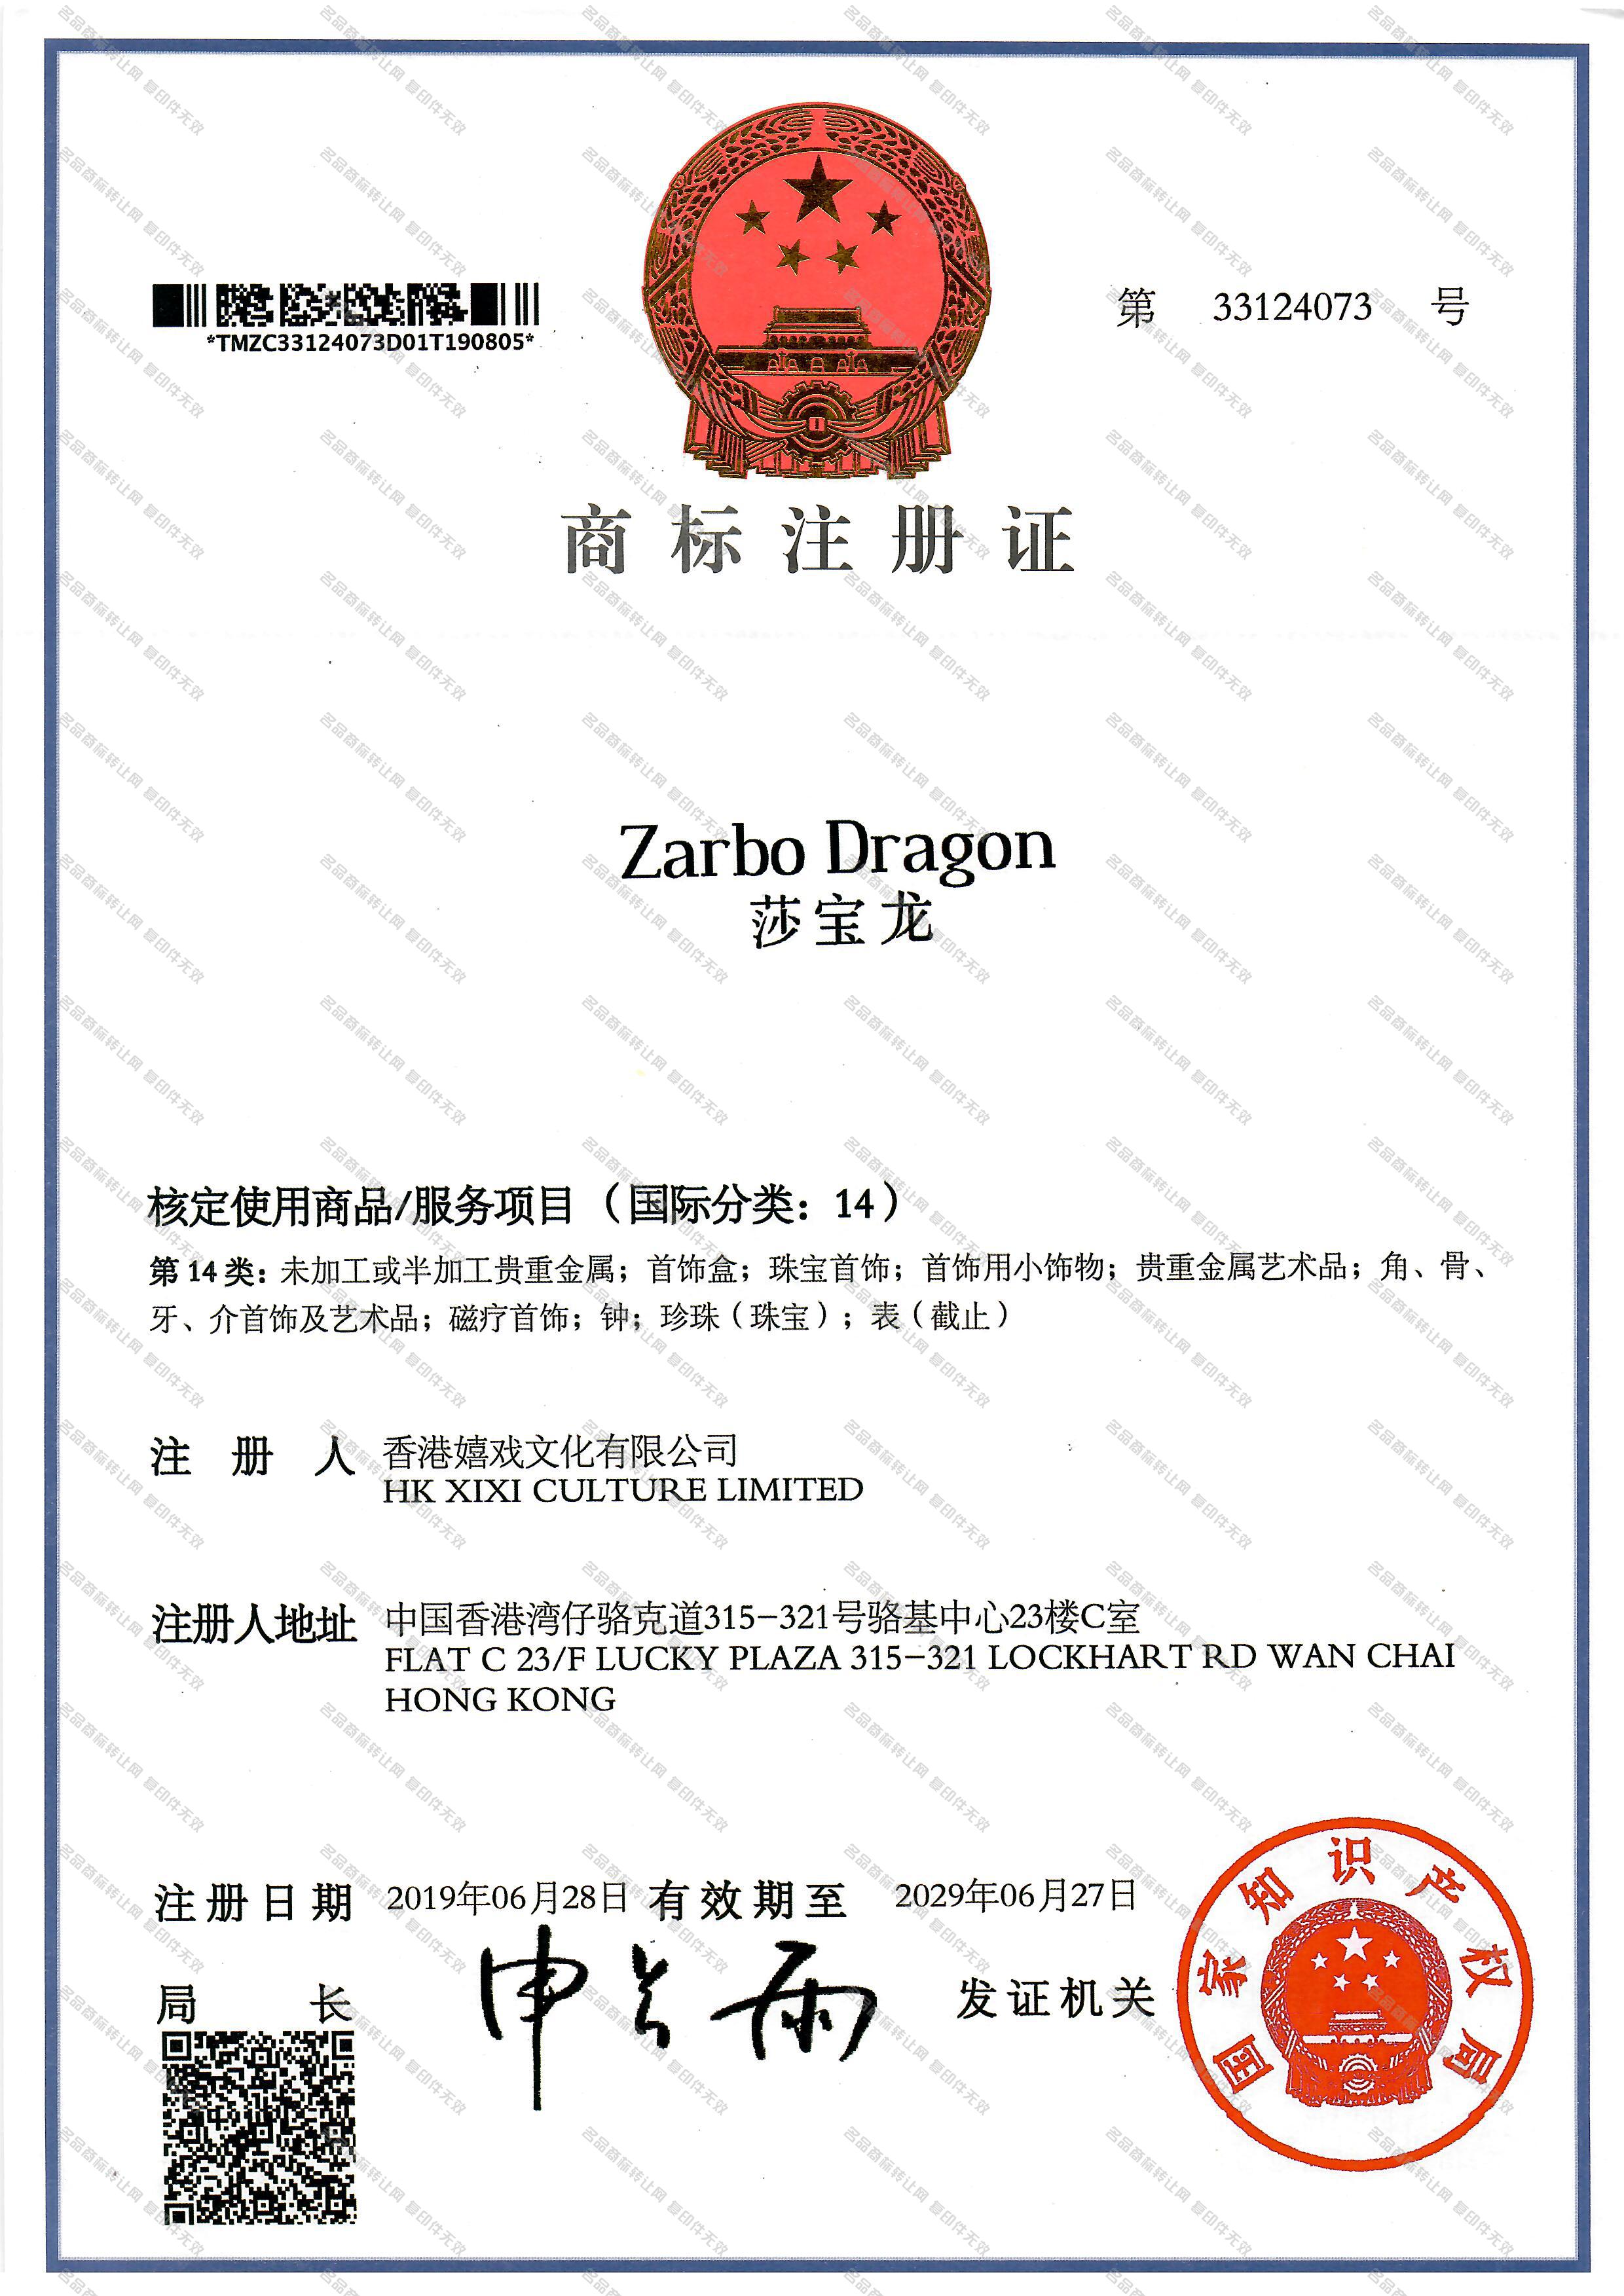 莎宝龙 ZARBO DRAGON注册证